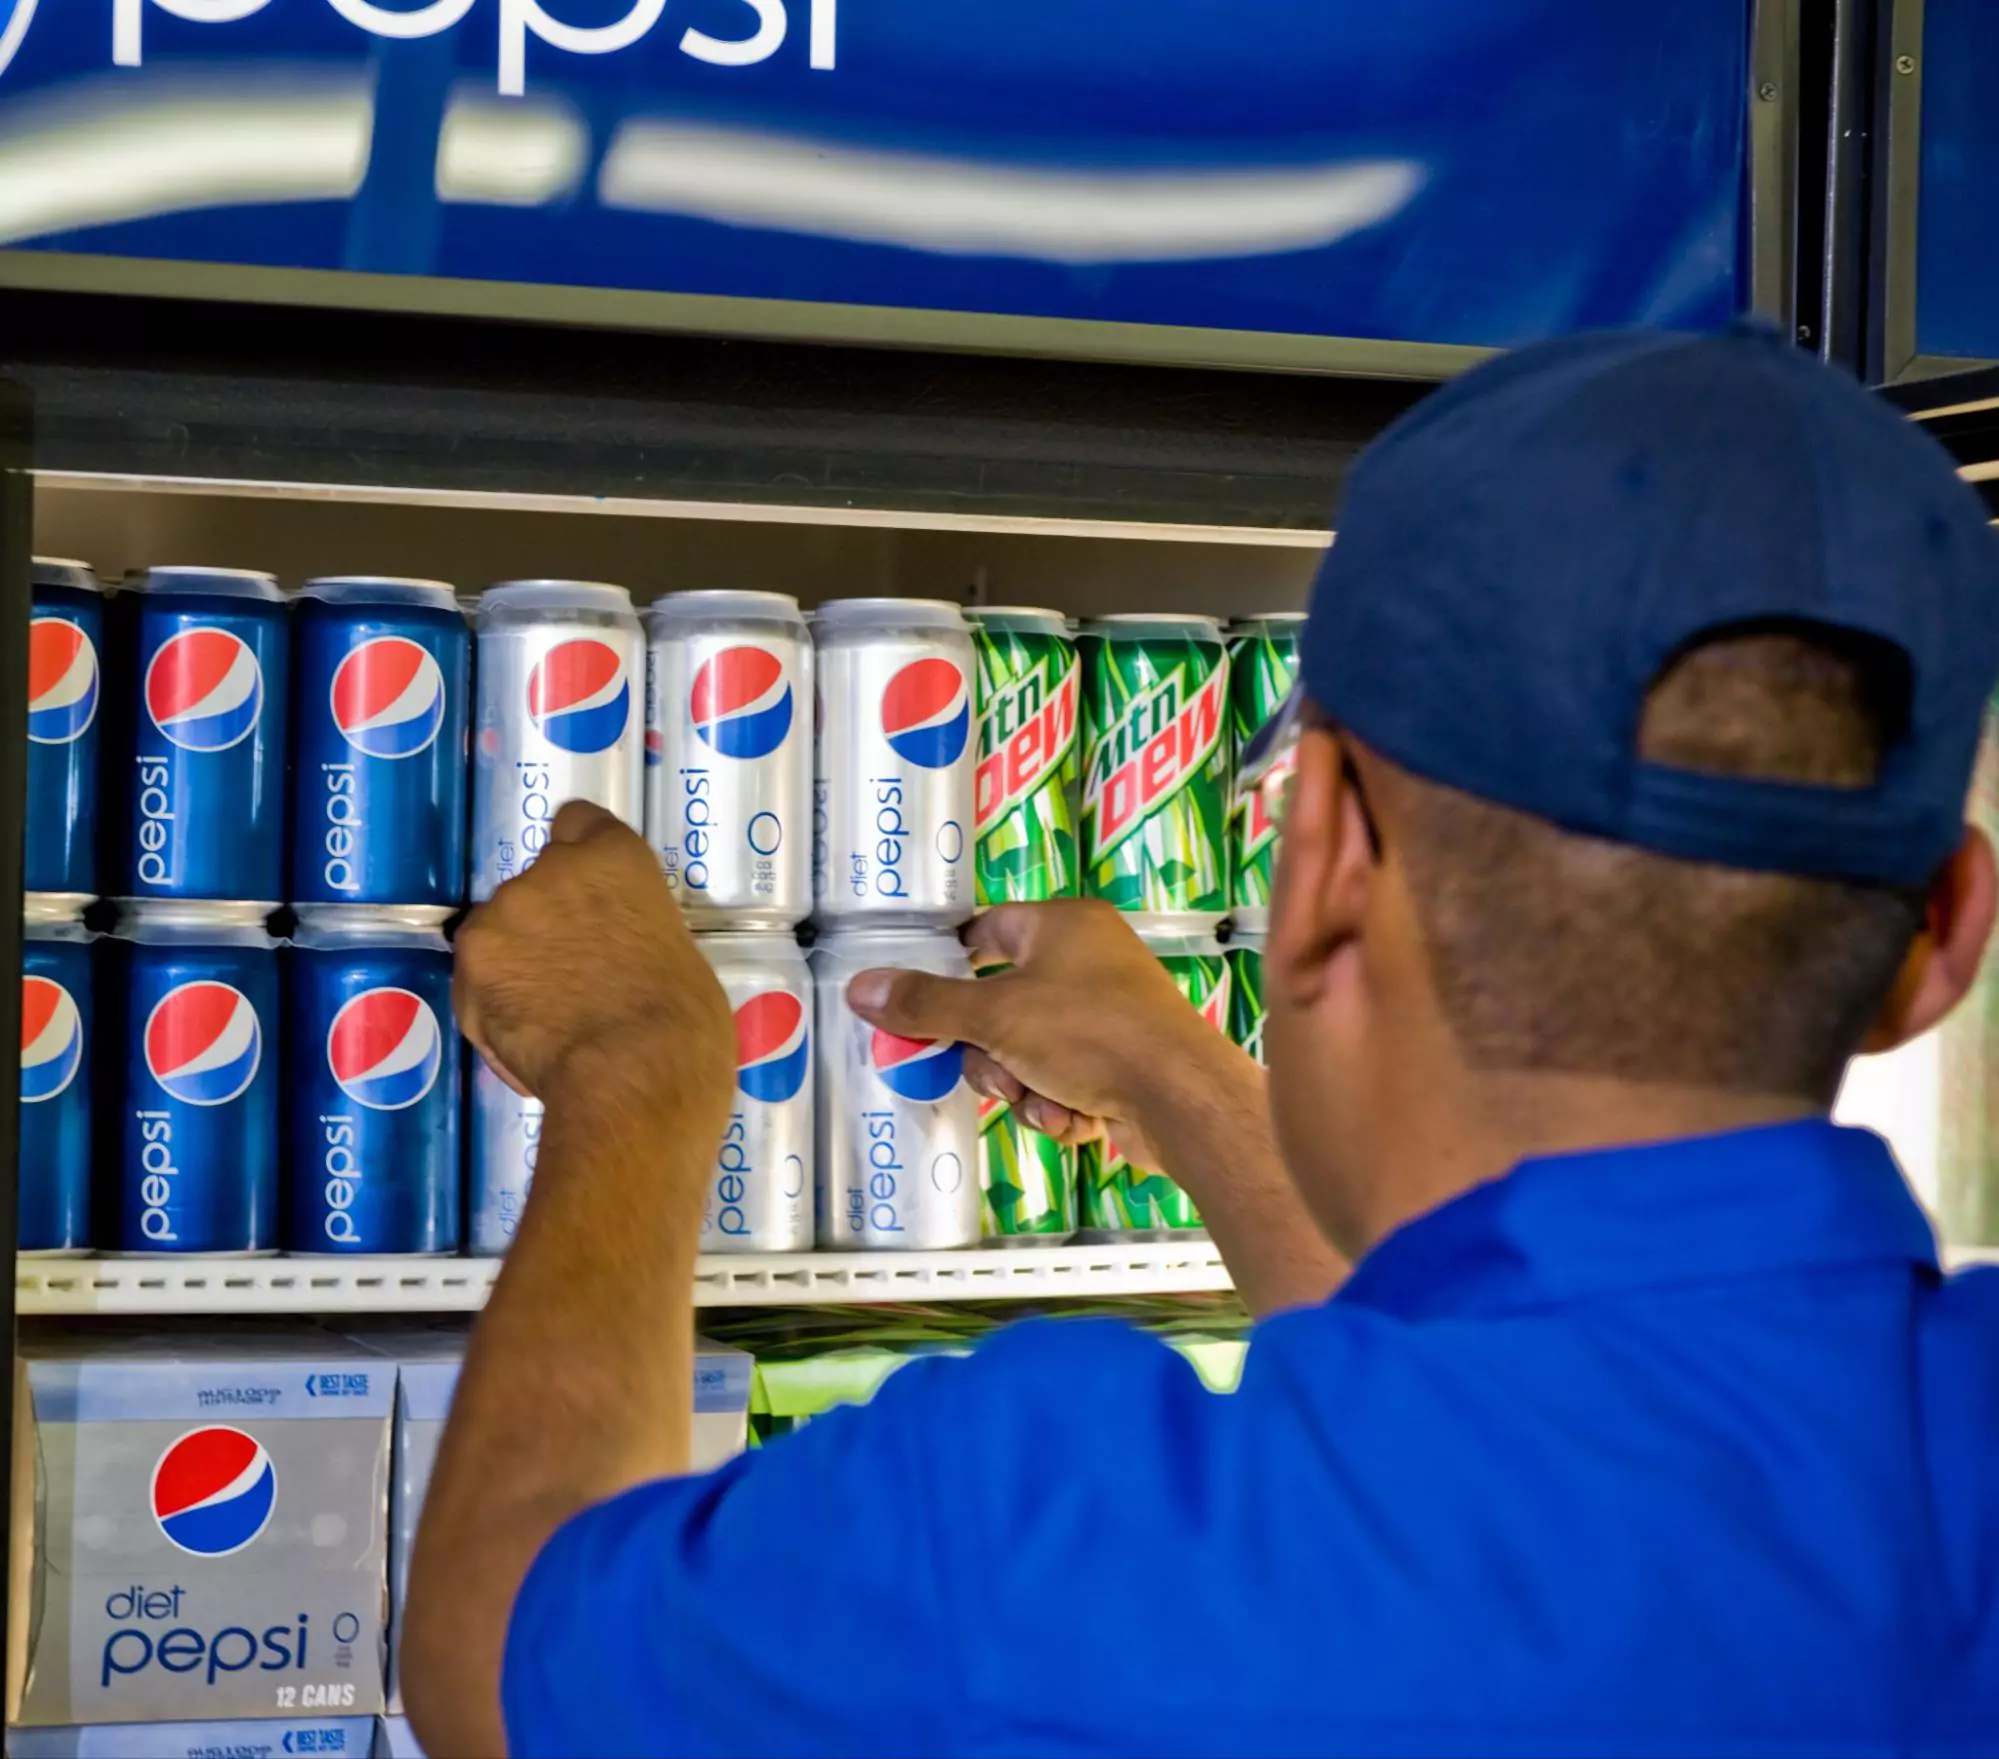 중앙에 물결 모양의 흰색 선이 있는 원형 빨간색, 흰색 및 파란색 디자인이 특징인 Pepsi 로고